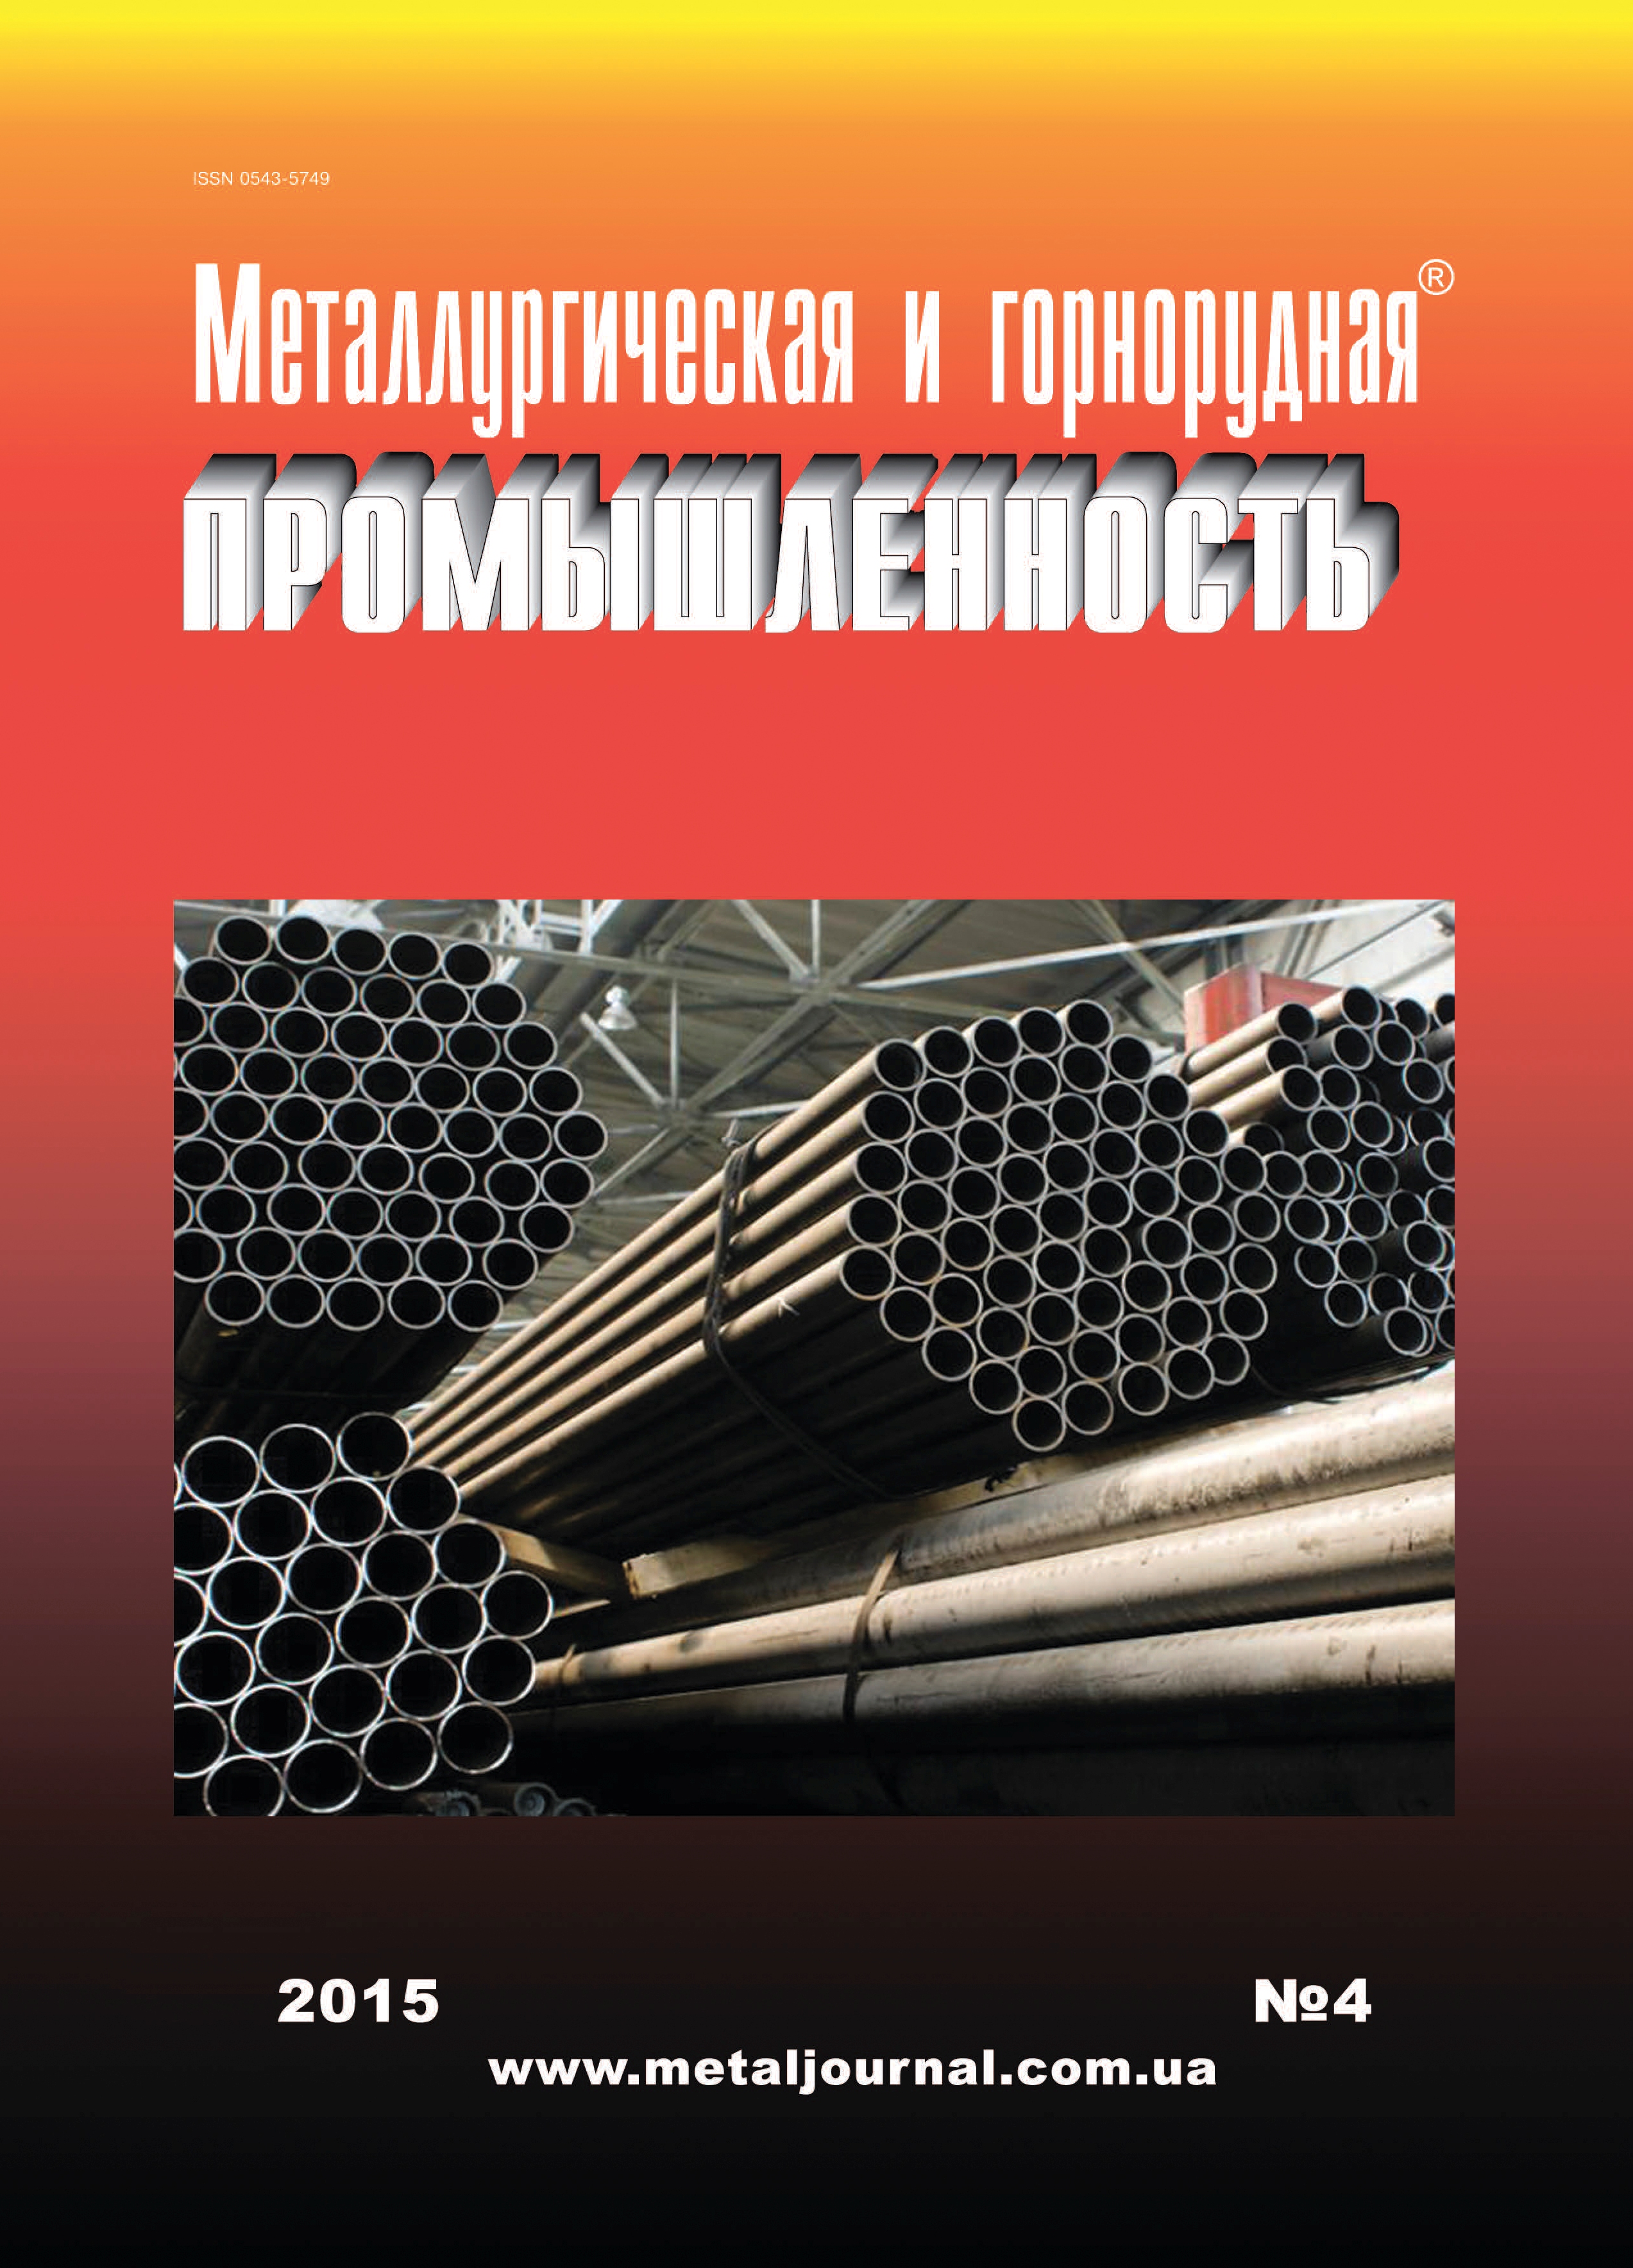 Металлургическая и горнорудная промышленность №4 (295) 2015 г. изображение